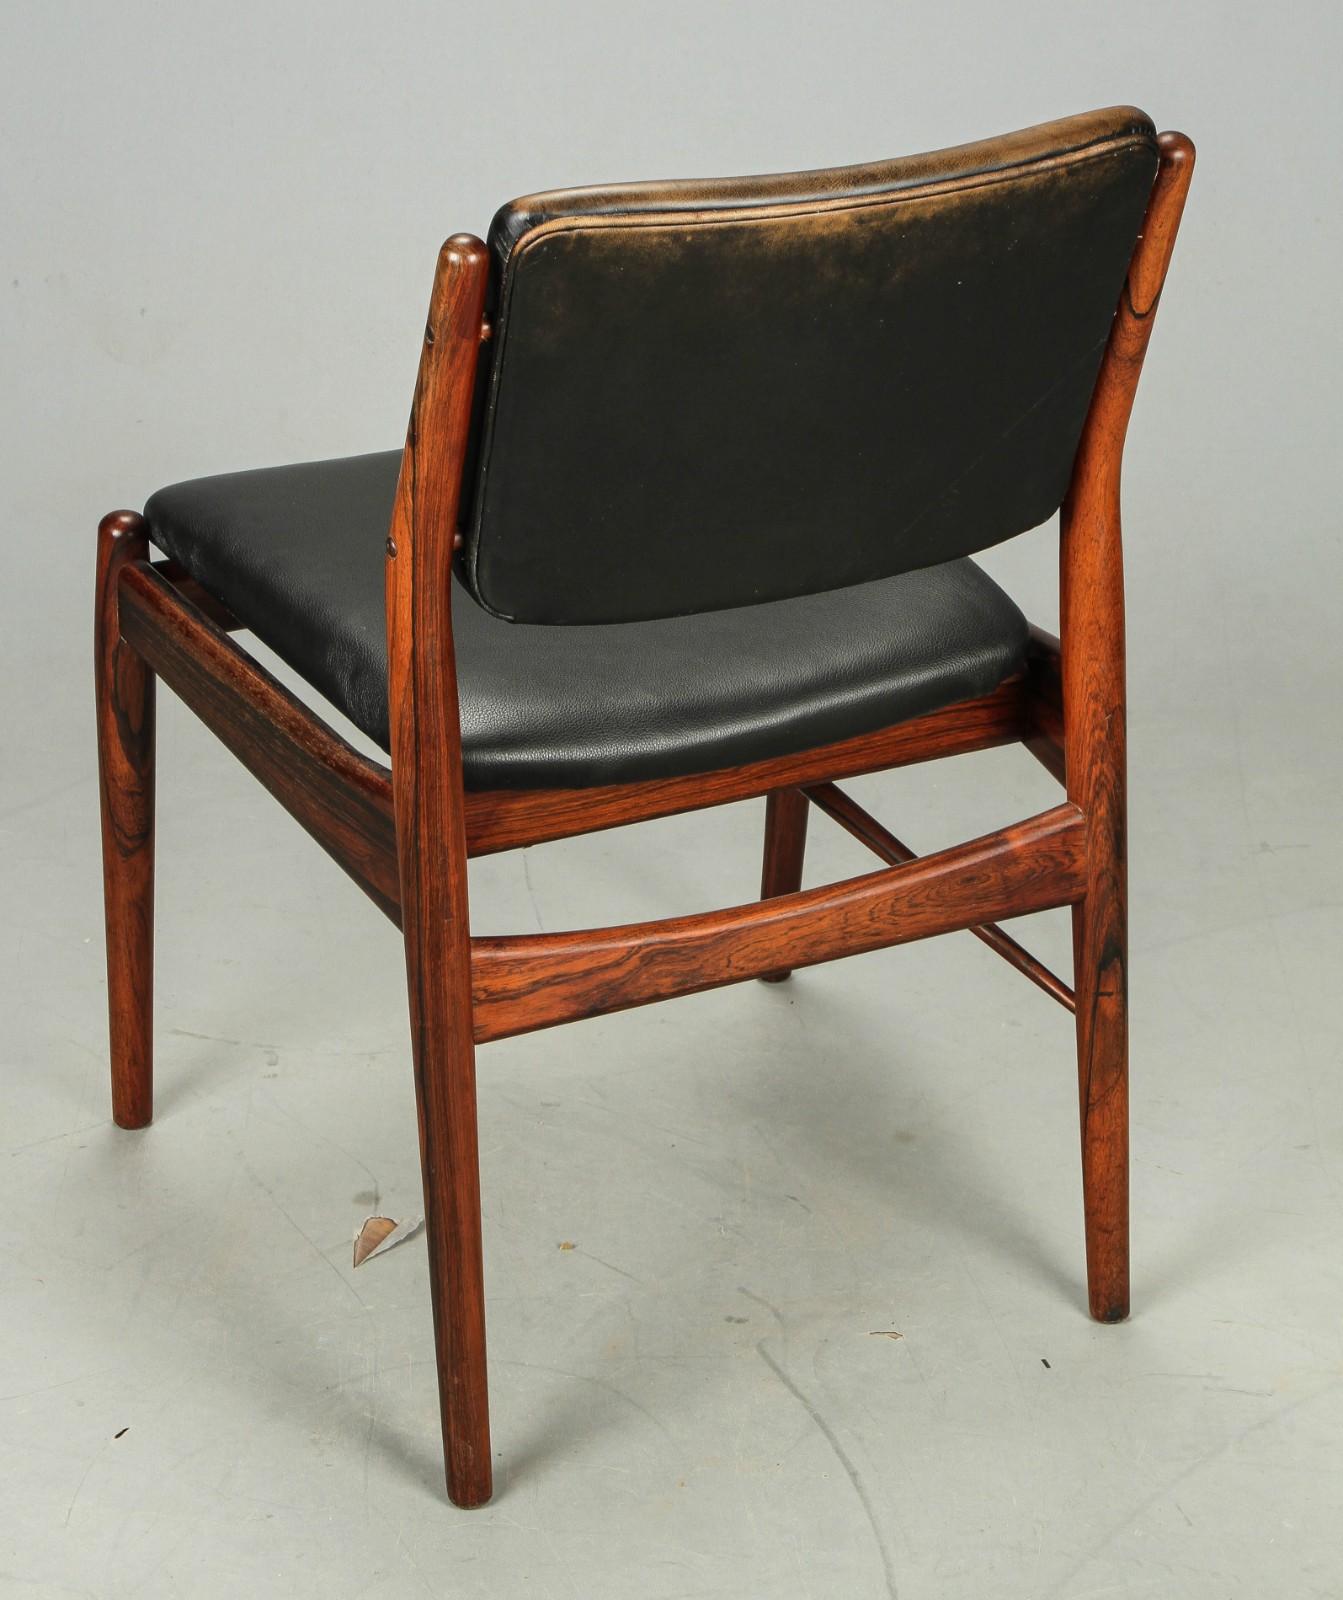 Hardwood frame upholstered with brack leather. Designed by Arne Vodder for Helge Sibast Møbler in the 1960s. Original condition not restored.